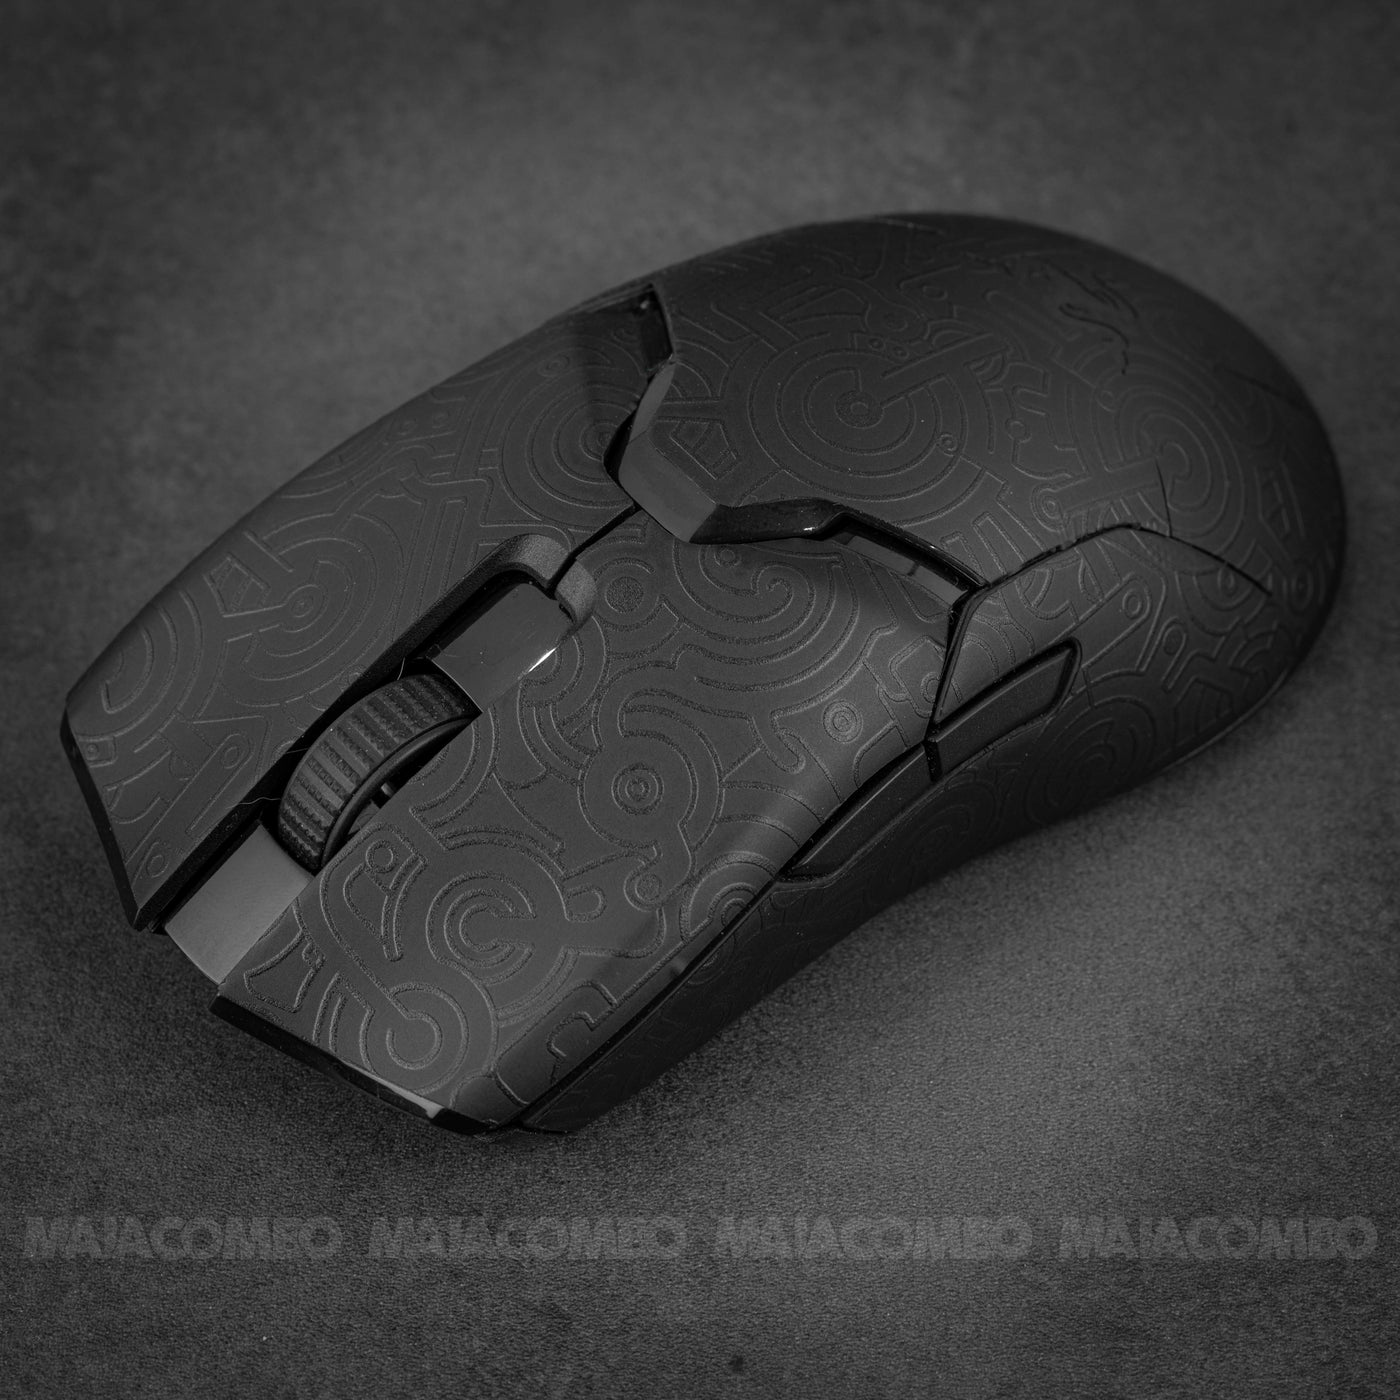 Razer Viper Ultimate Wireless Mouse Skin/ Wrap